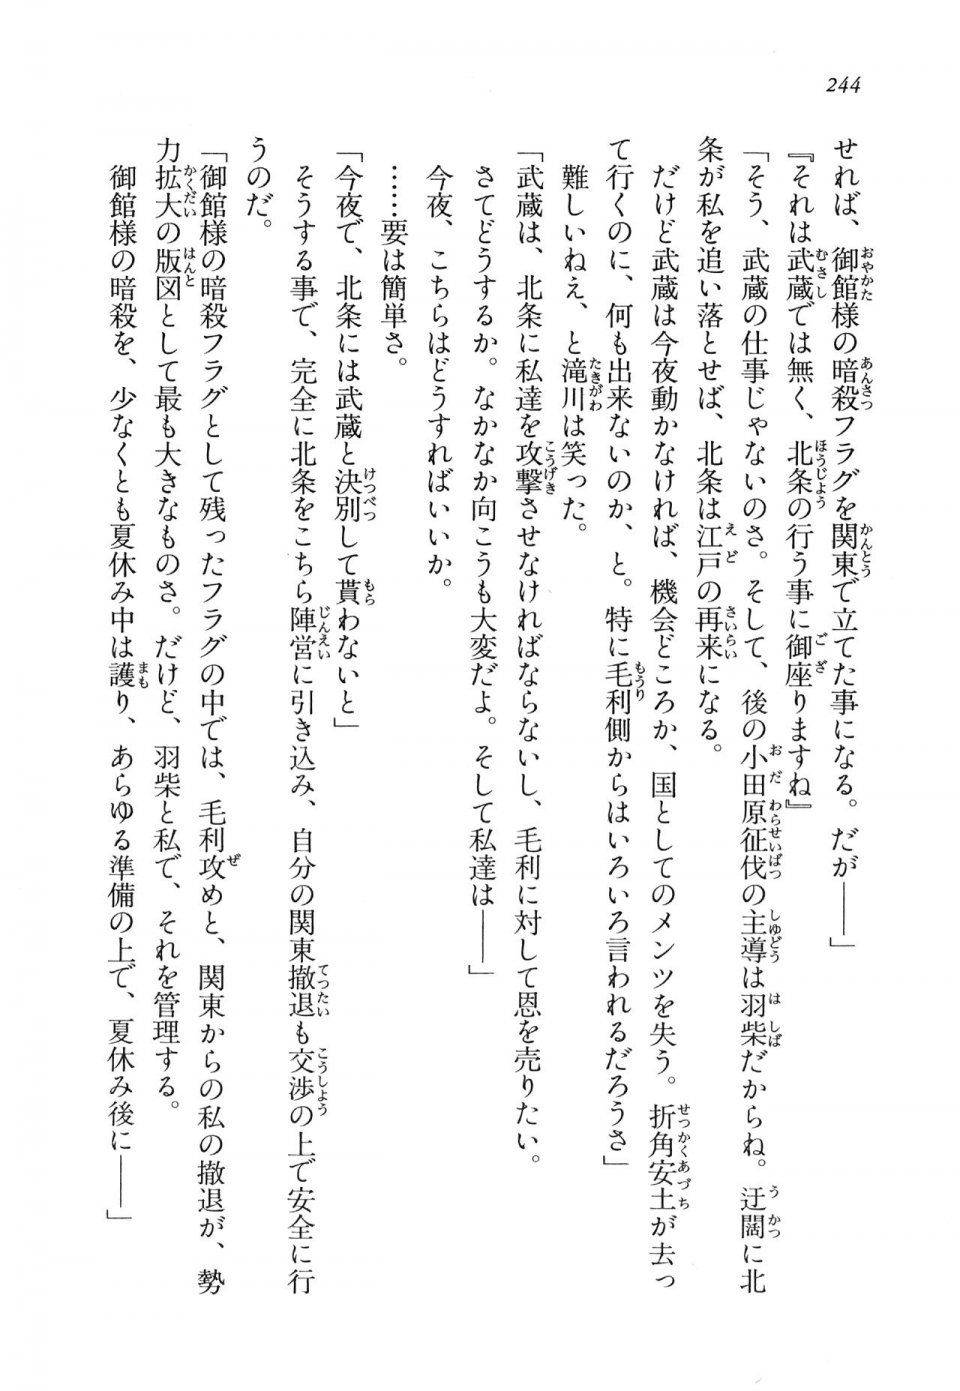 Kyoukai Senjou no Horizon LN Vol 11(5A) - Photo #244